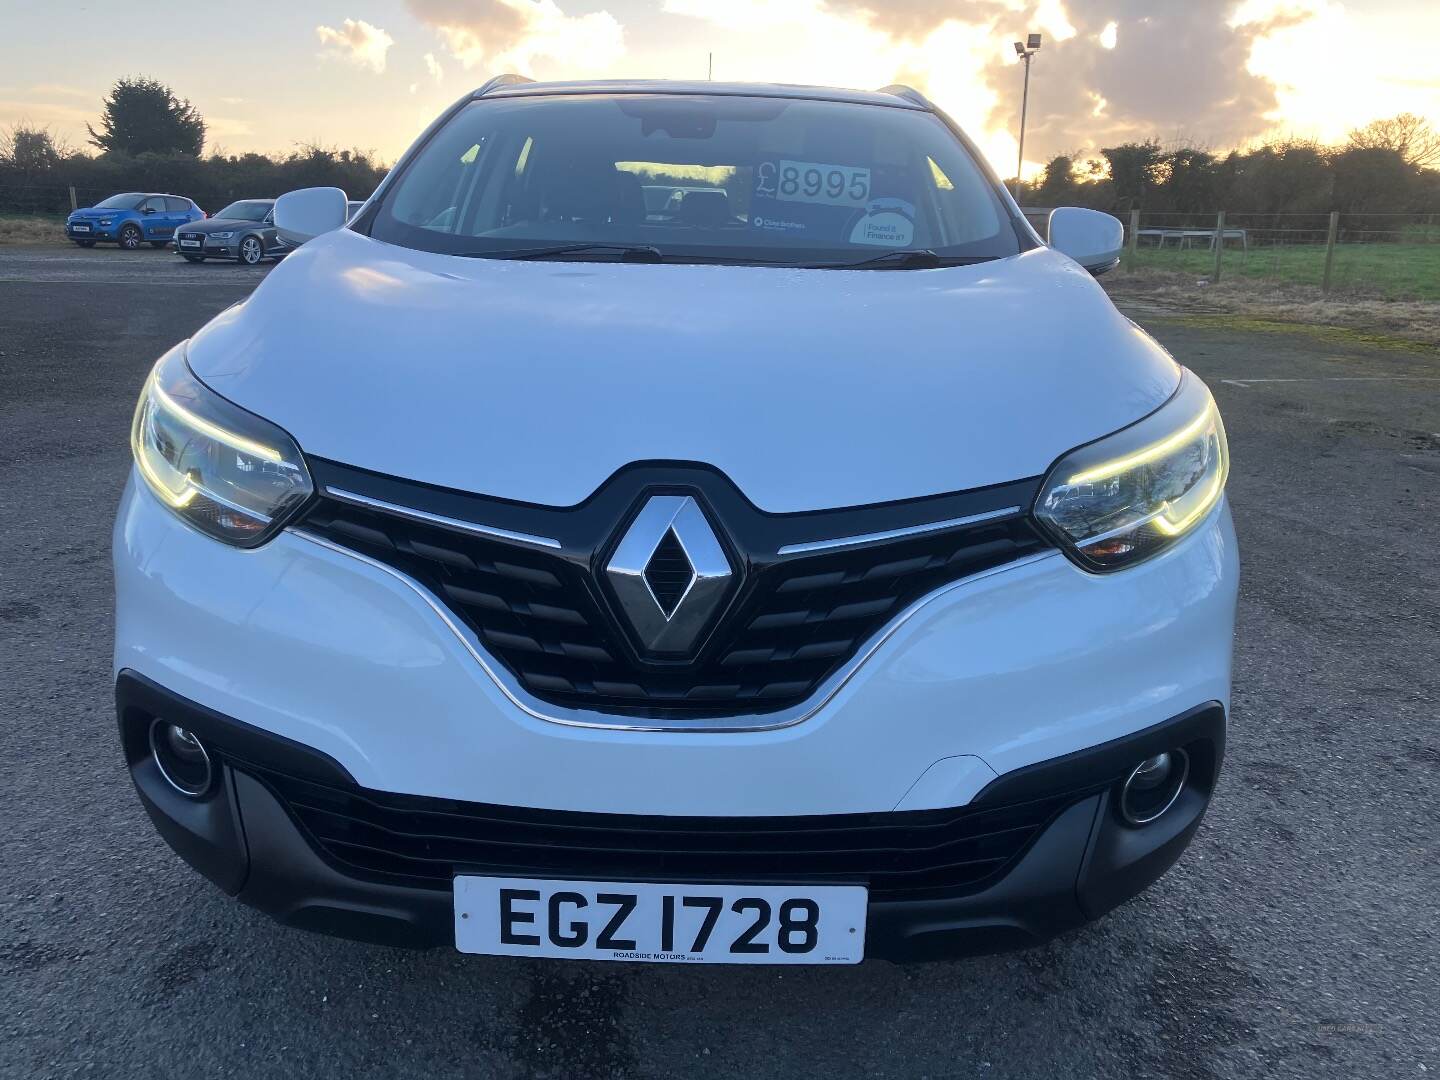 Renault Kadjar DIESEL HATCHBACK in Down